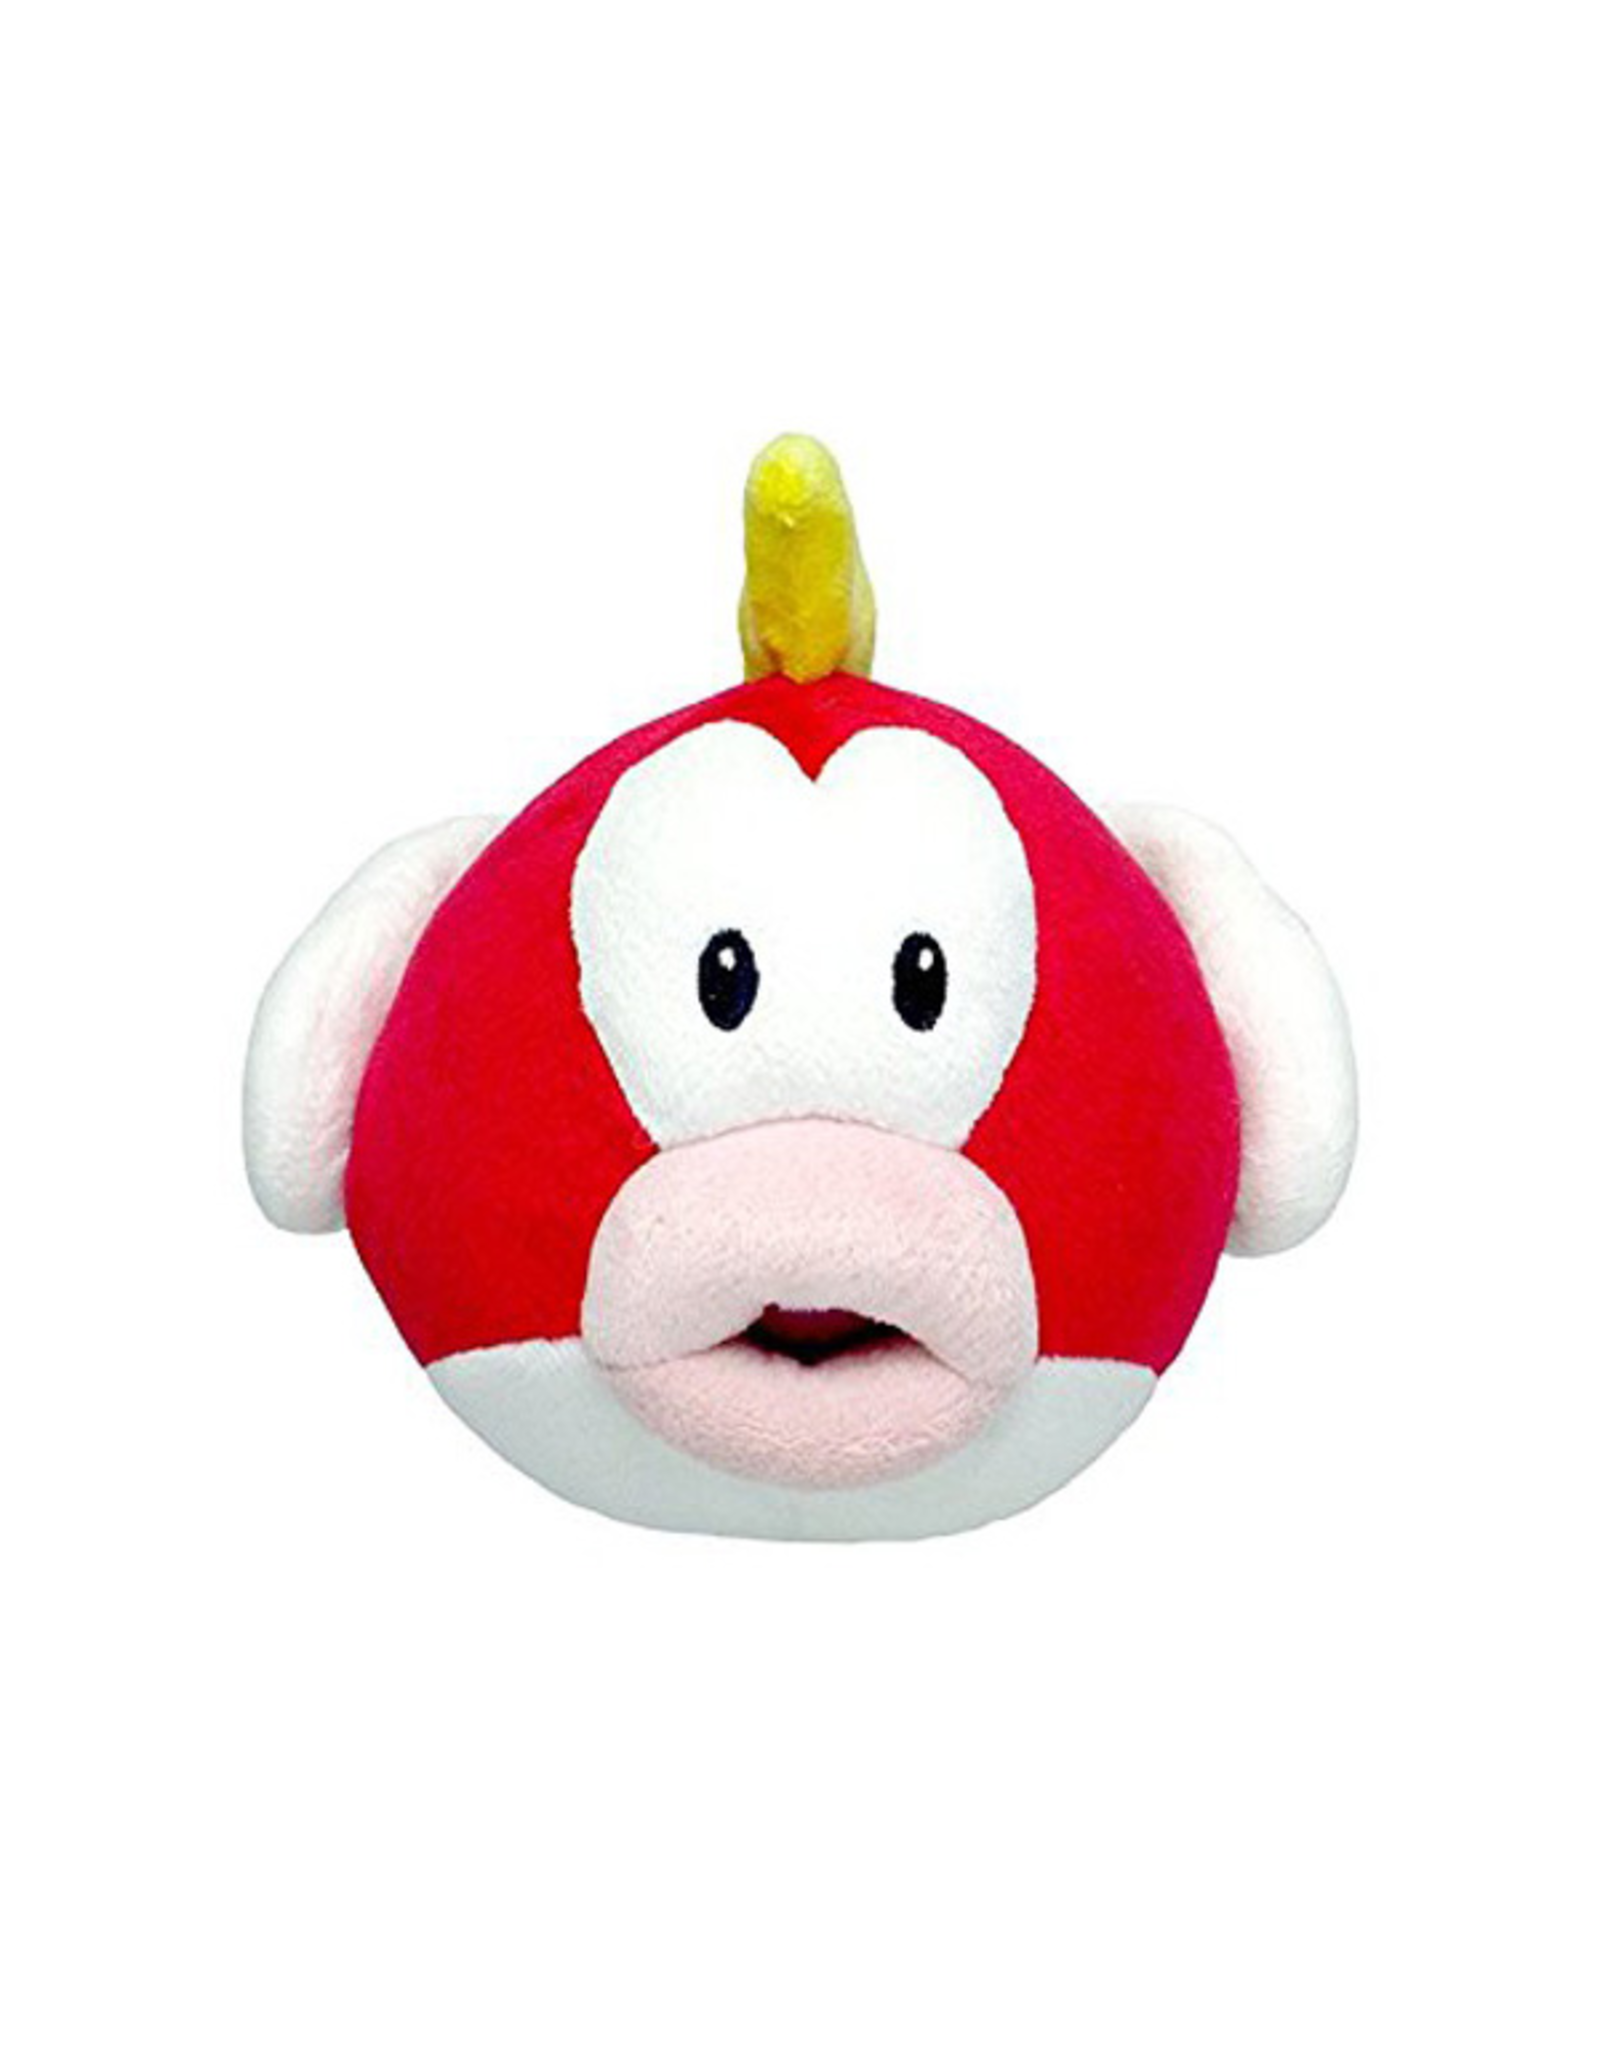 Little Buddy Super Mario Bros - Cheep Cheep - 6" Plush